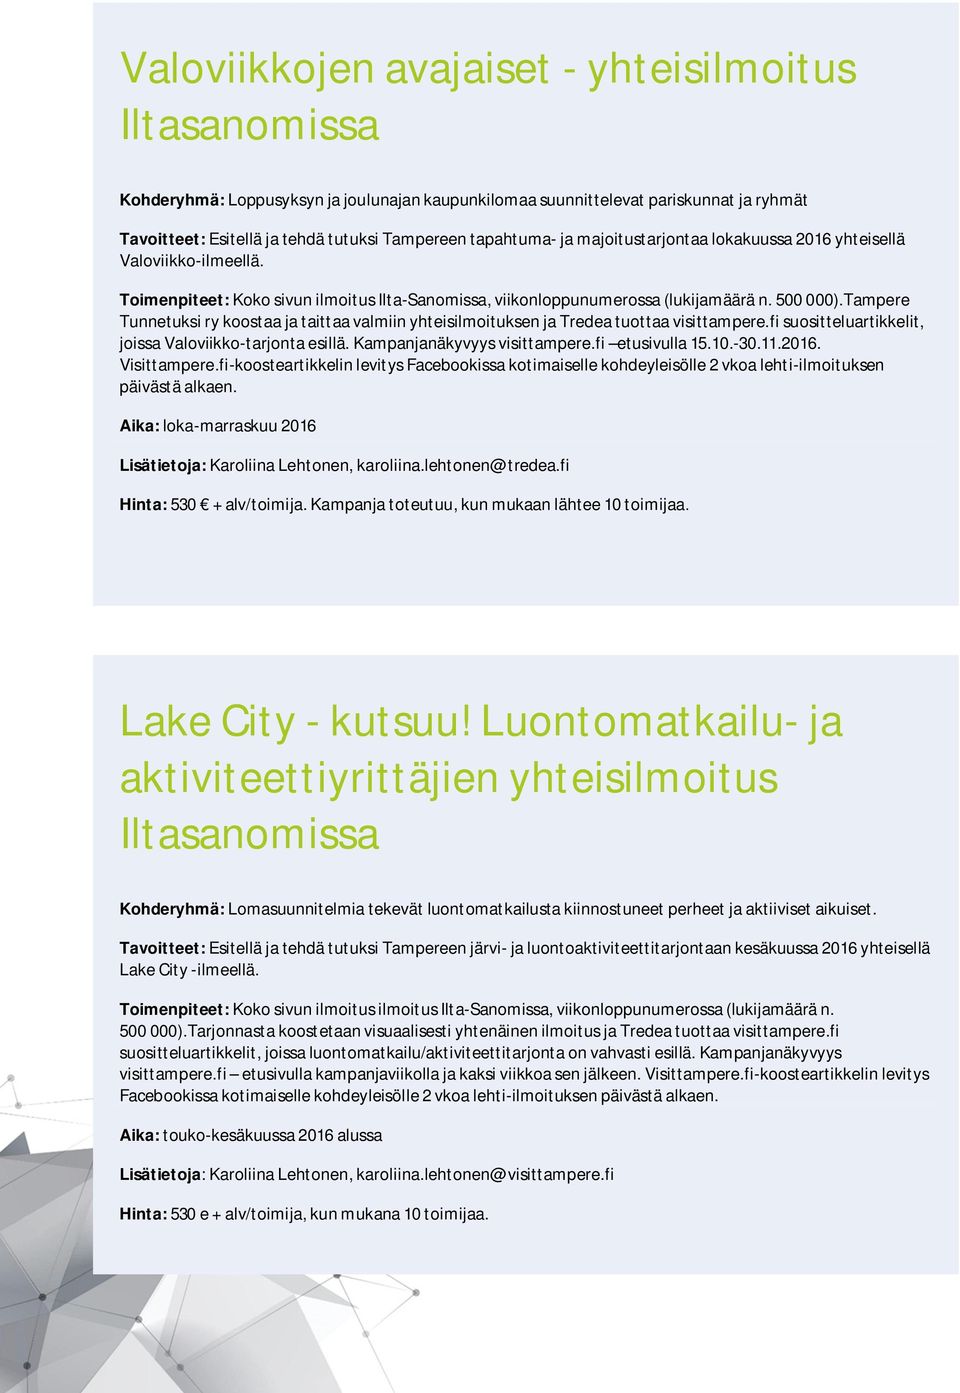 Tampere Tunnetuksi ry koostaa ja taittaa valmiin yhteisilmoituksen ja Tredea tuottaa visittampere.fi suositteluartikkelit, joissa Valoviikko-tarjonta esillä. Kampanjanäkyvyys visittampere.